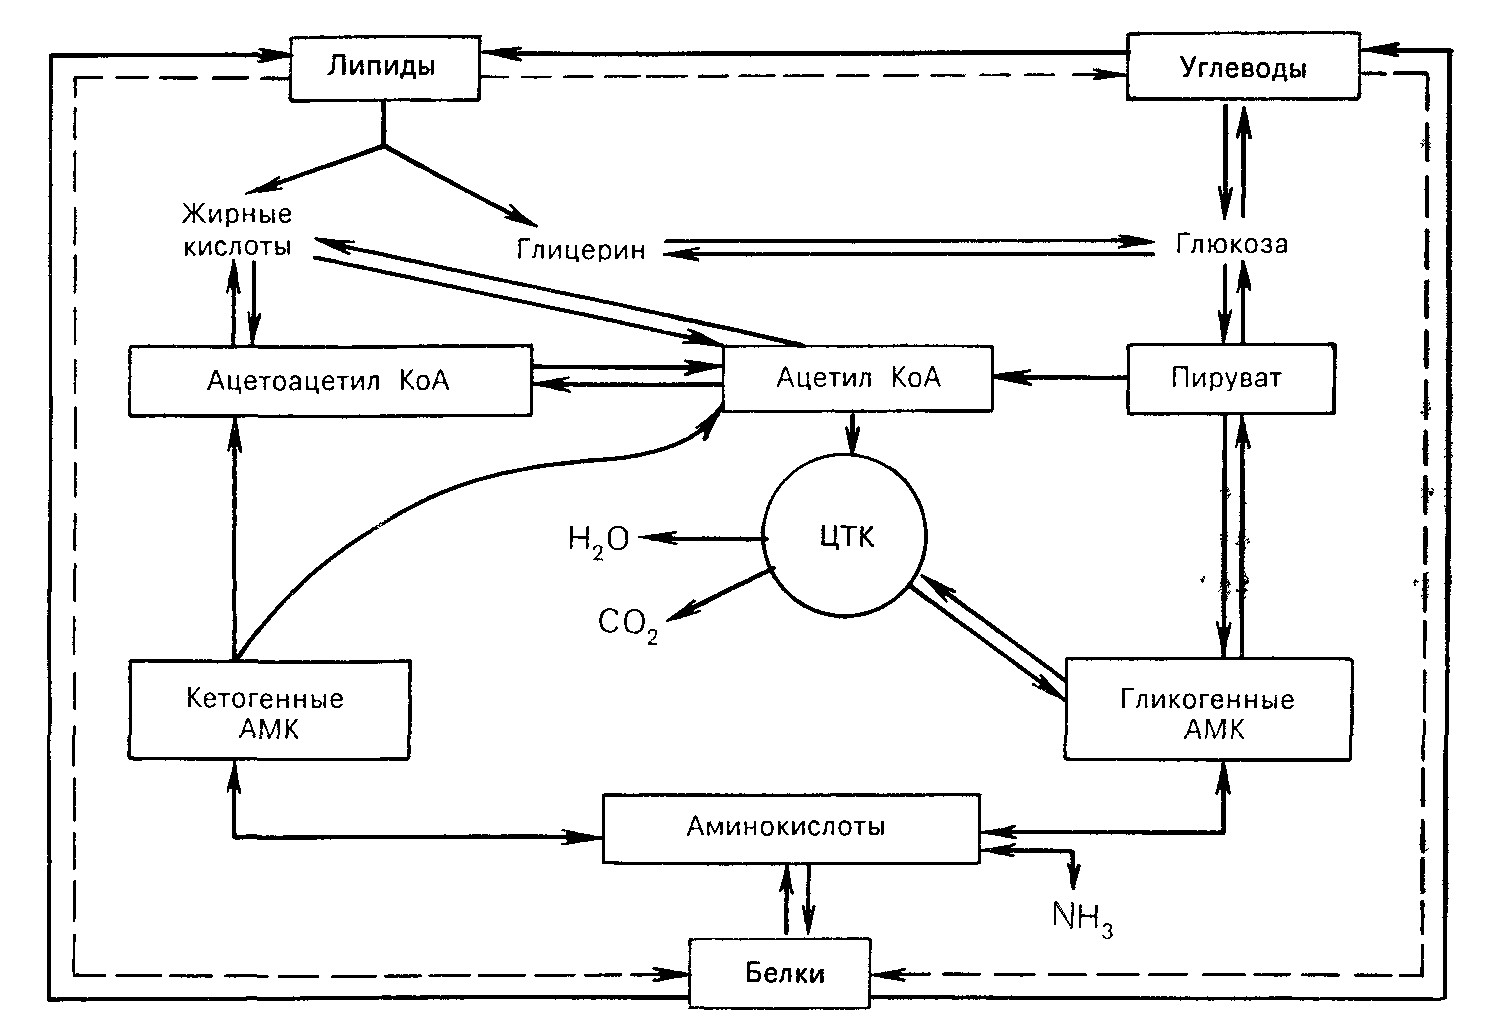 Синтез белка из углеводов. Взаимосвязь обмена углеводов, липидов, аминокислот (схема).. Схема взаимосвязи обмена аминокислот и углеводов. Схема взаимосвязи обмена углеводов липидов и белков. Схема взаимосвязи углеводного и липидного обмена.